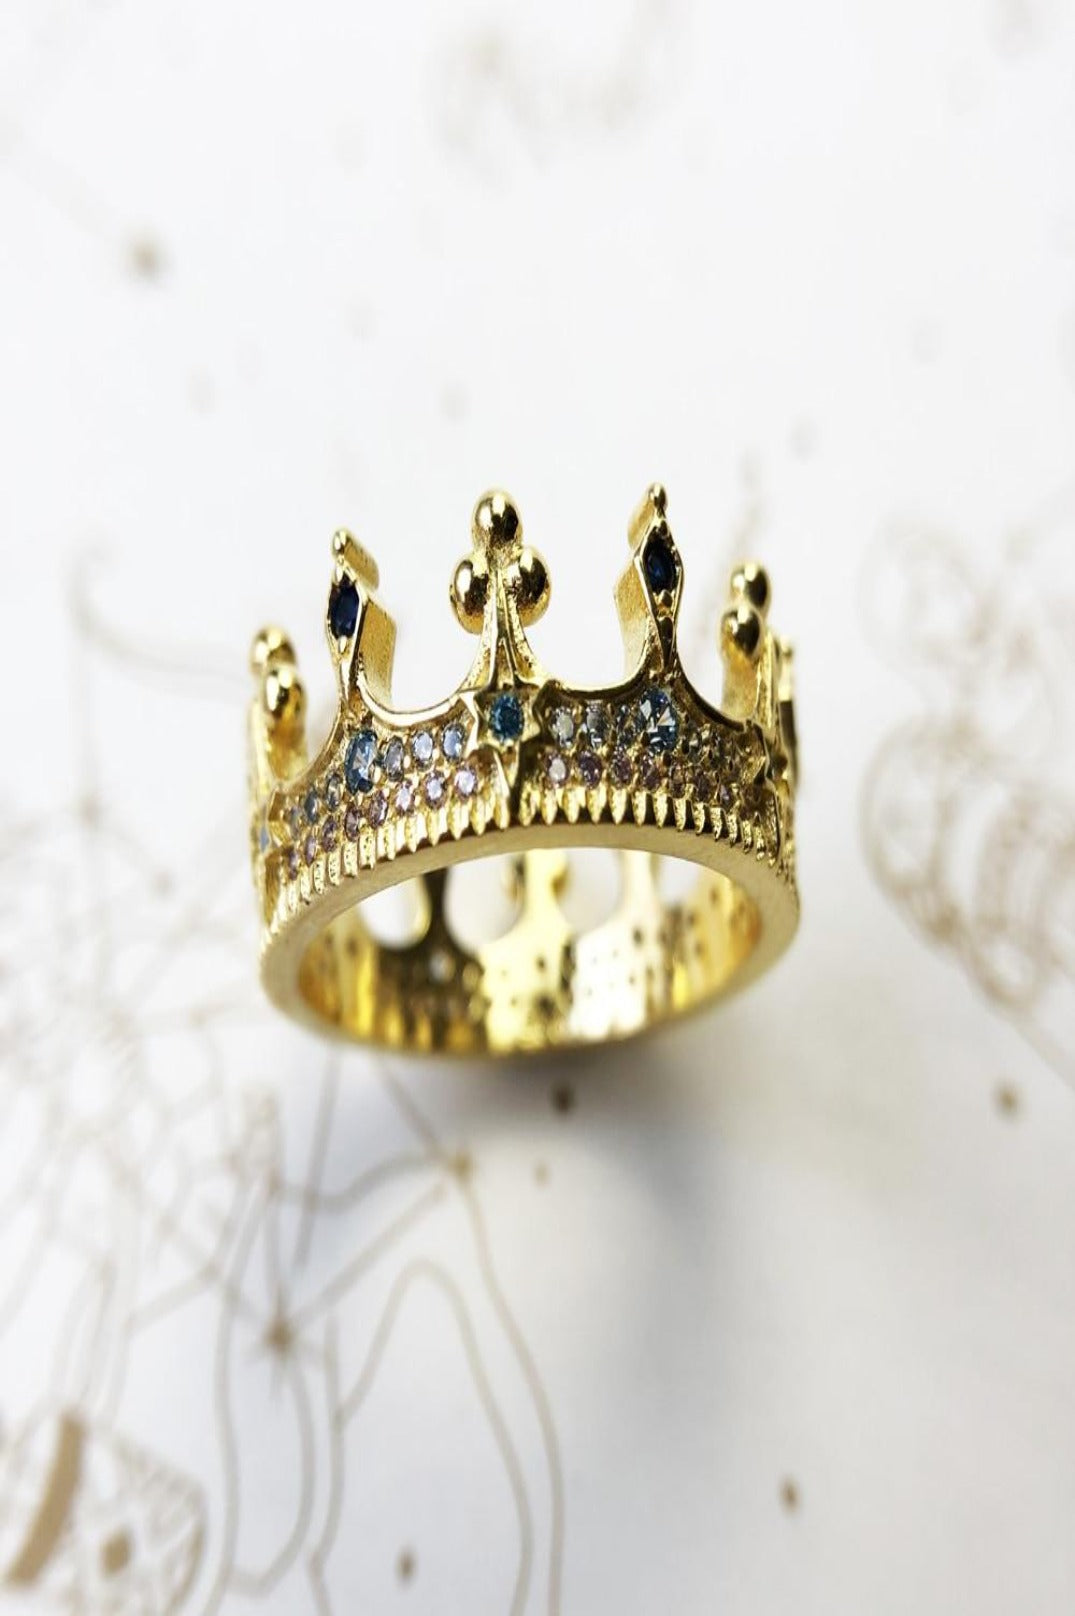 Enchanted Gem Crown Ring